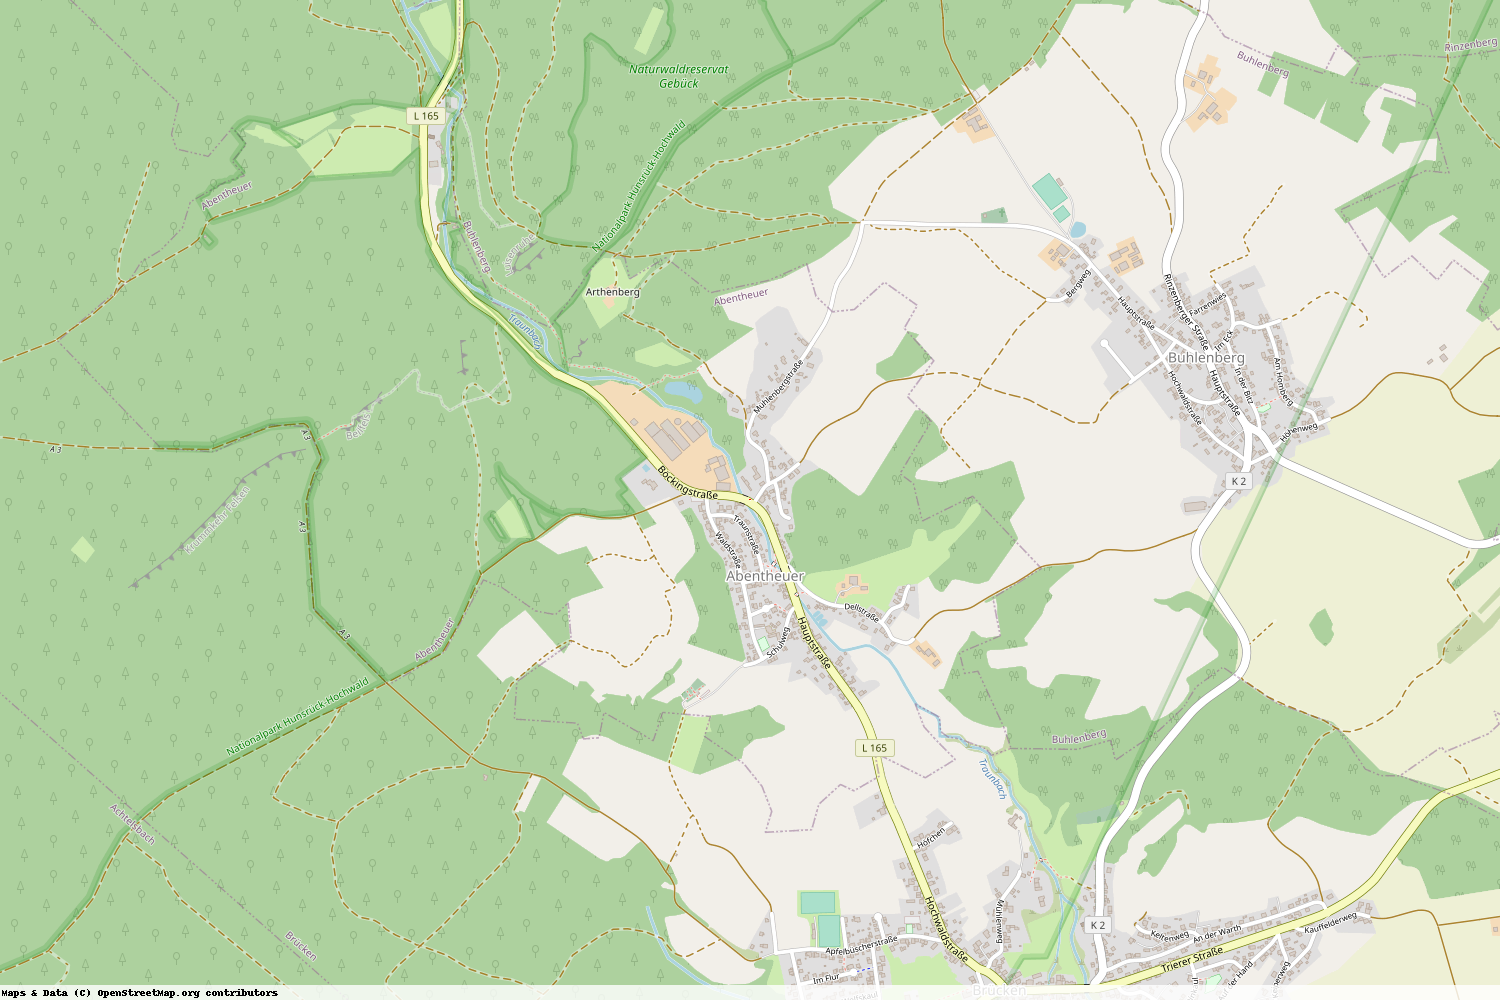 Ist gerade Stromausfall in Rheinland-Pfalz - Birkenfeld - Abentheuer?